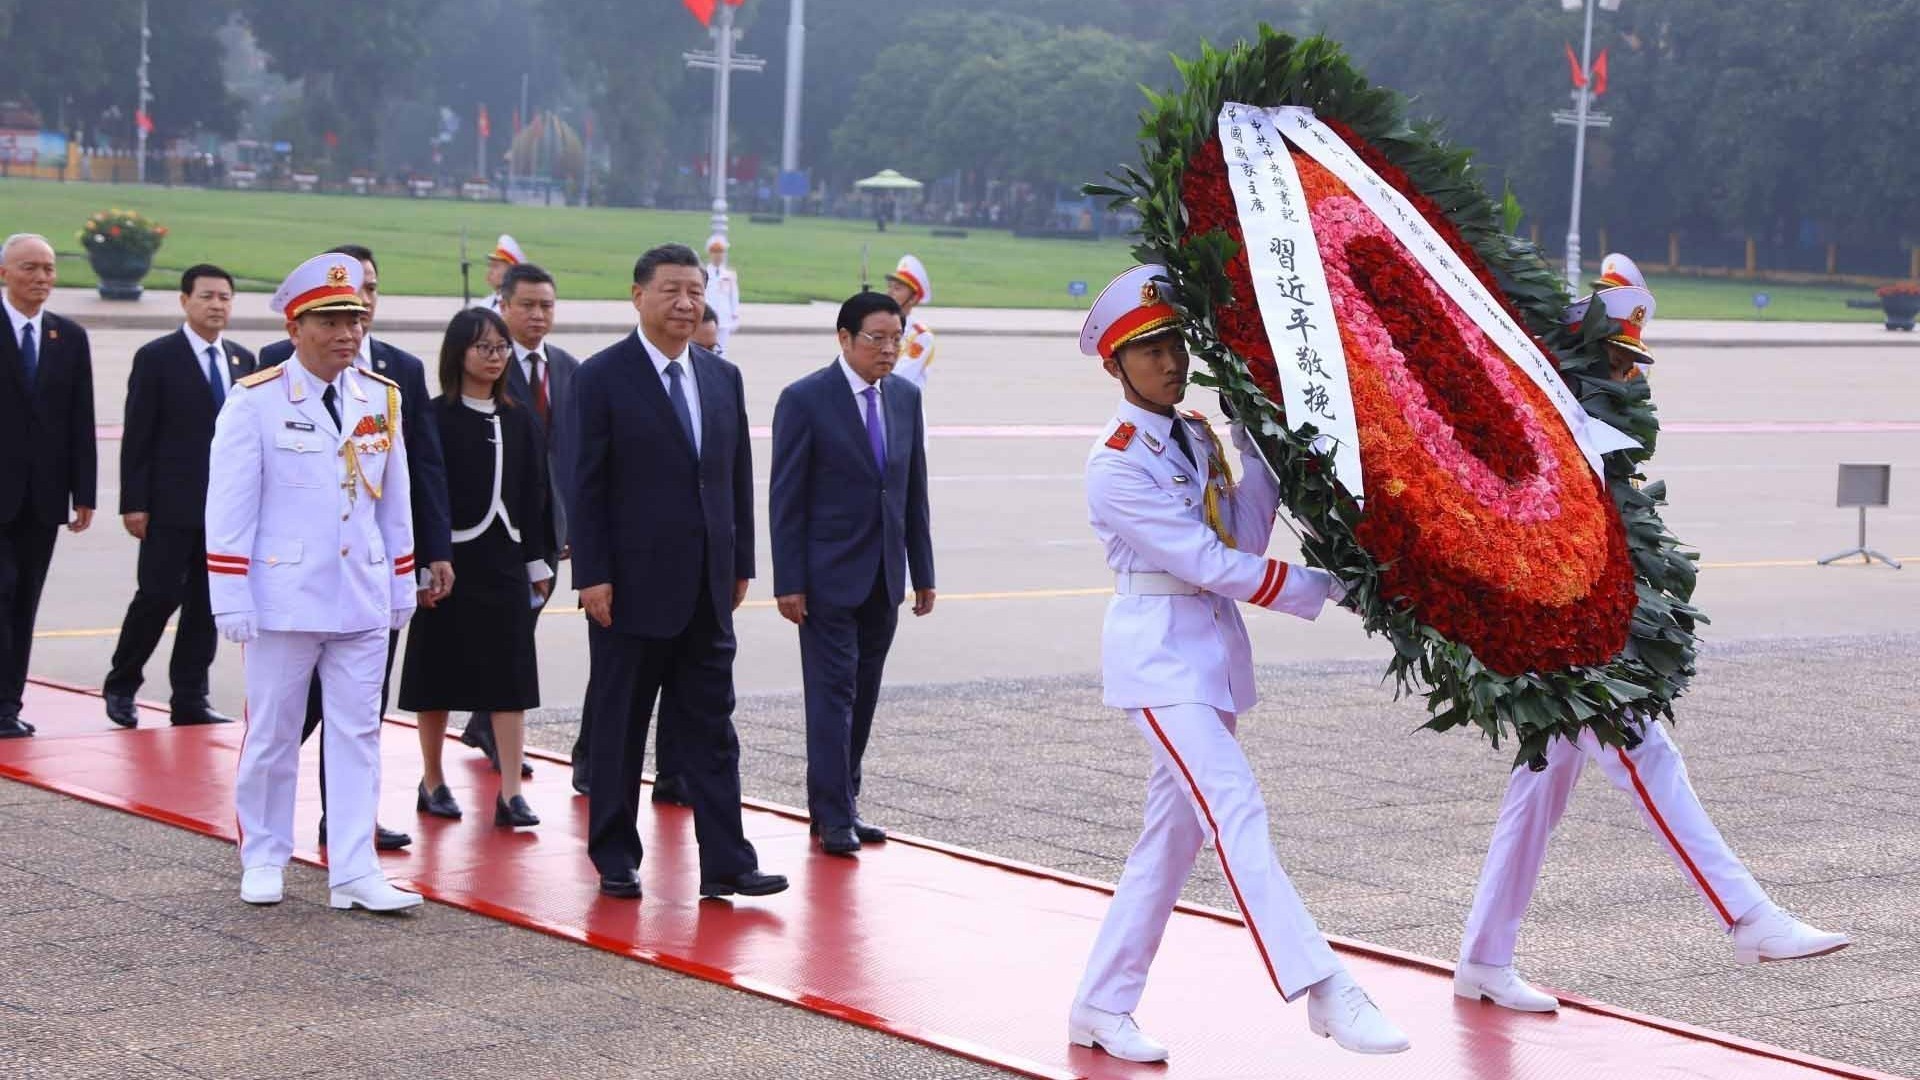 Tổng Bí thư, Chủ tịch nước Trung Quốc Tập Cận Bình vào Lăng viếng Chủ tịch Hồ Chí Minh